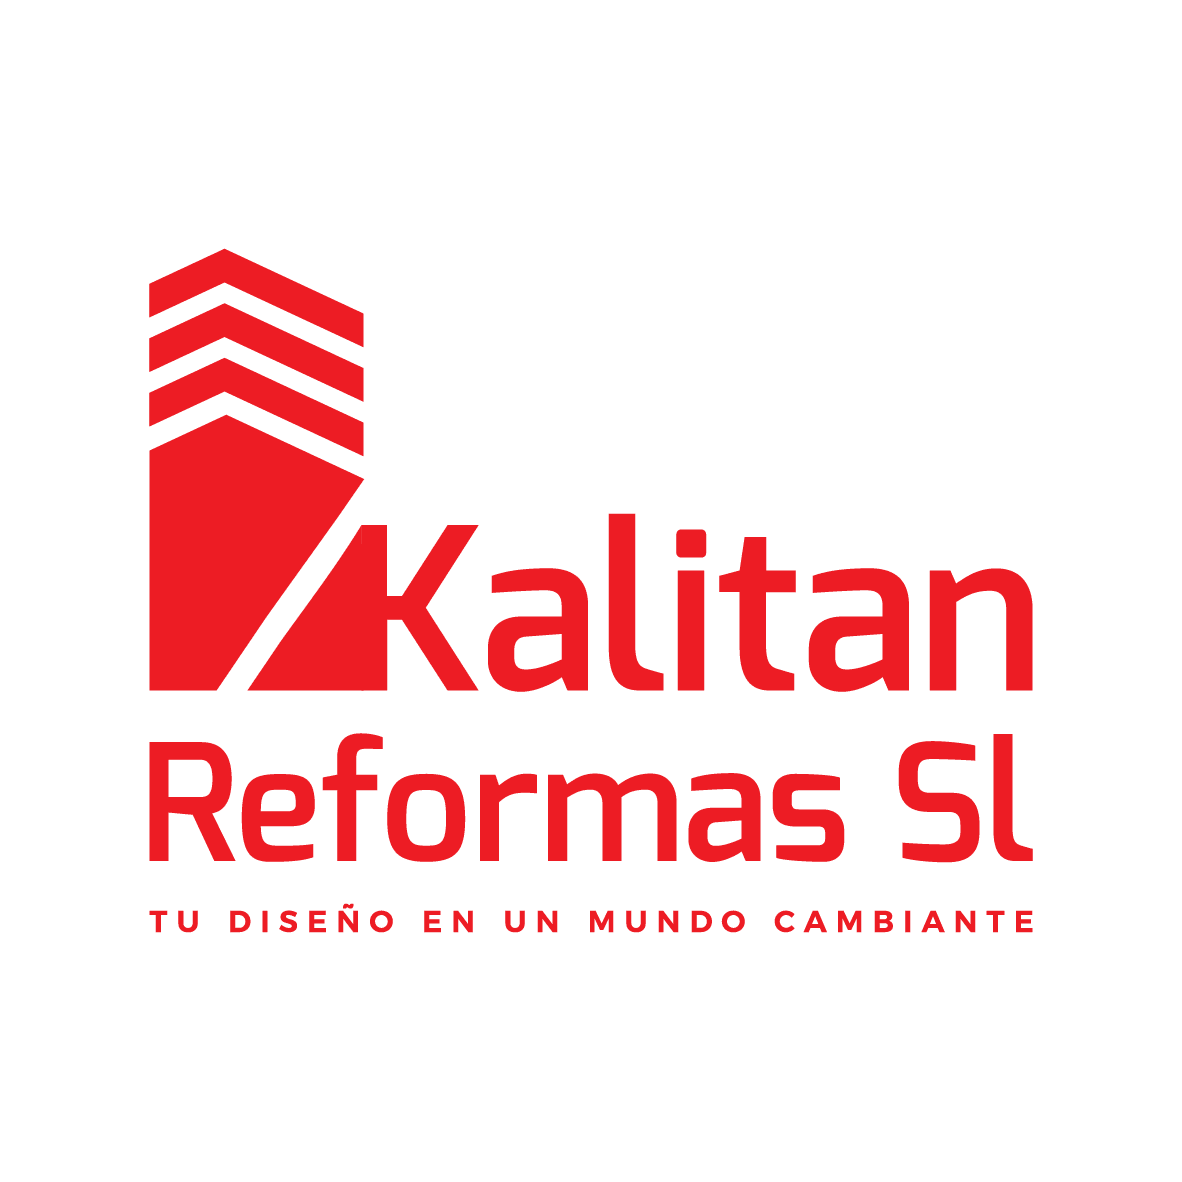 Kalitan Reformas Sl. Tu diseño en un mundo cambiante